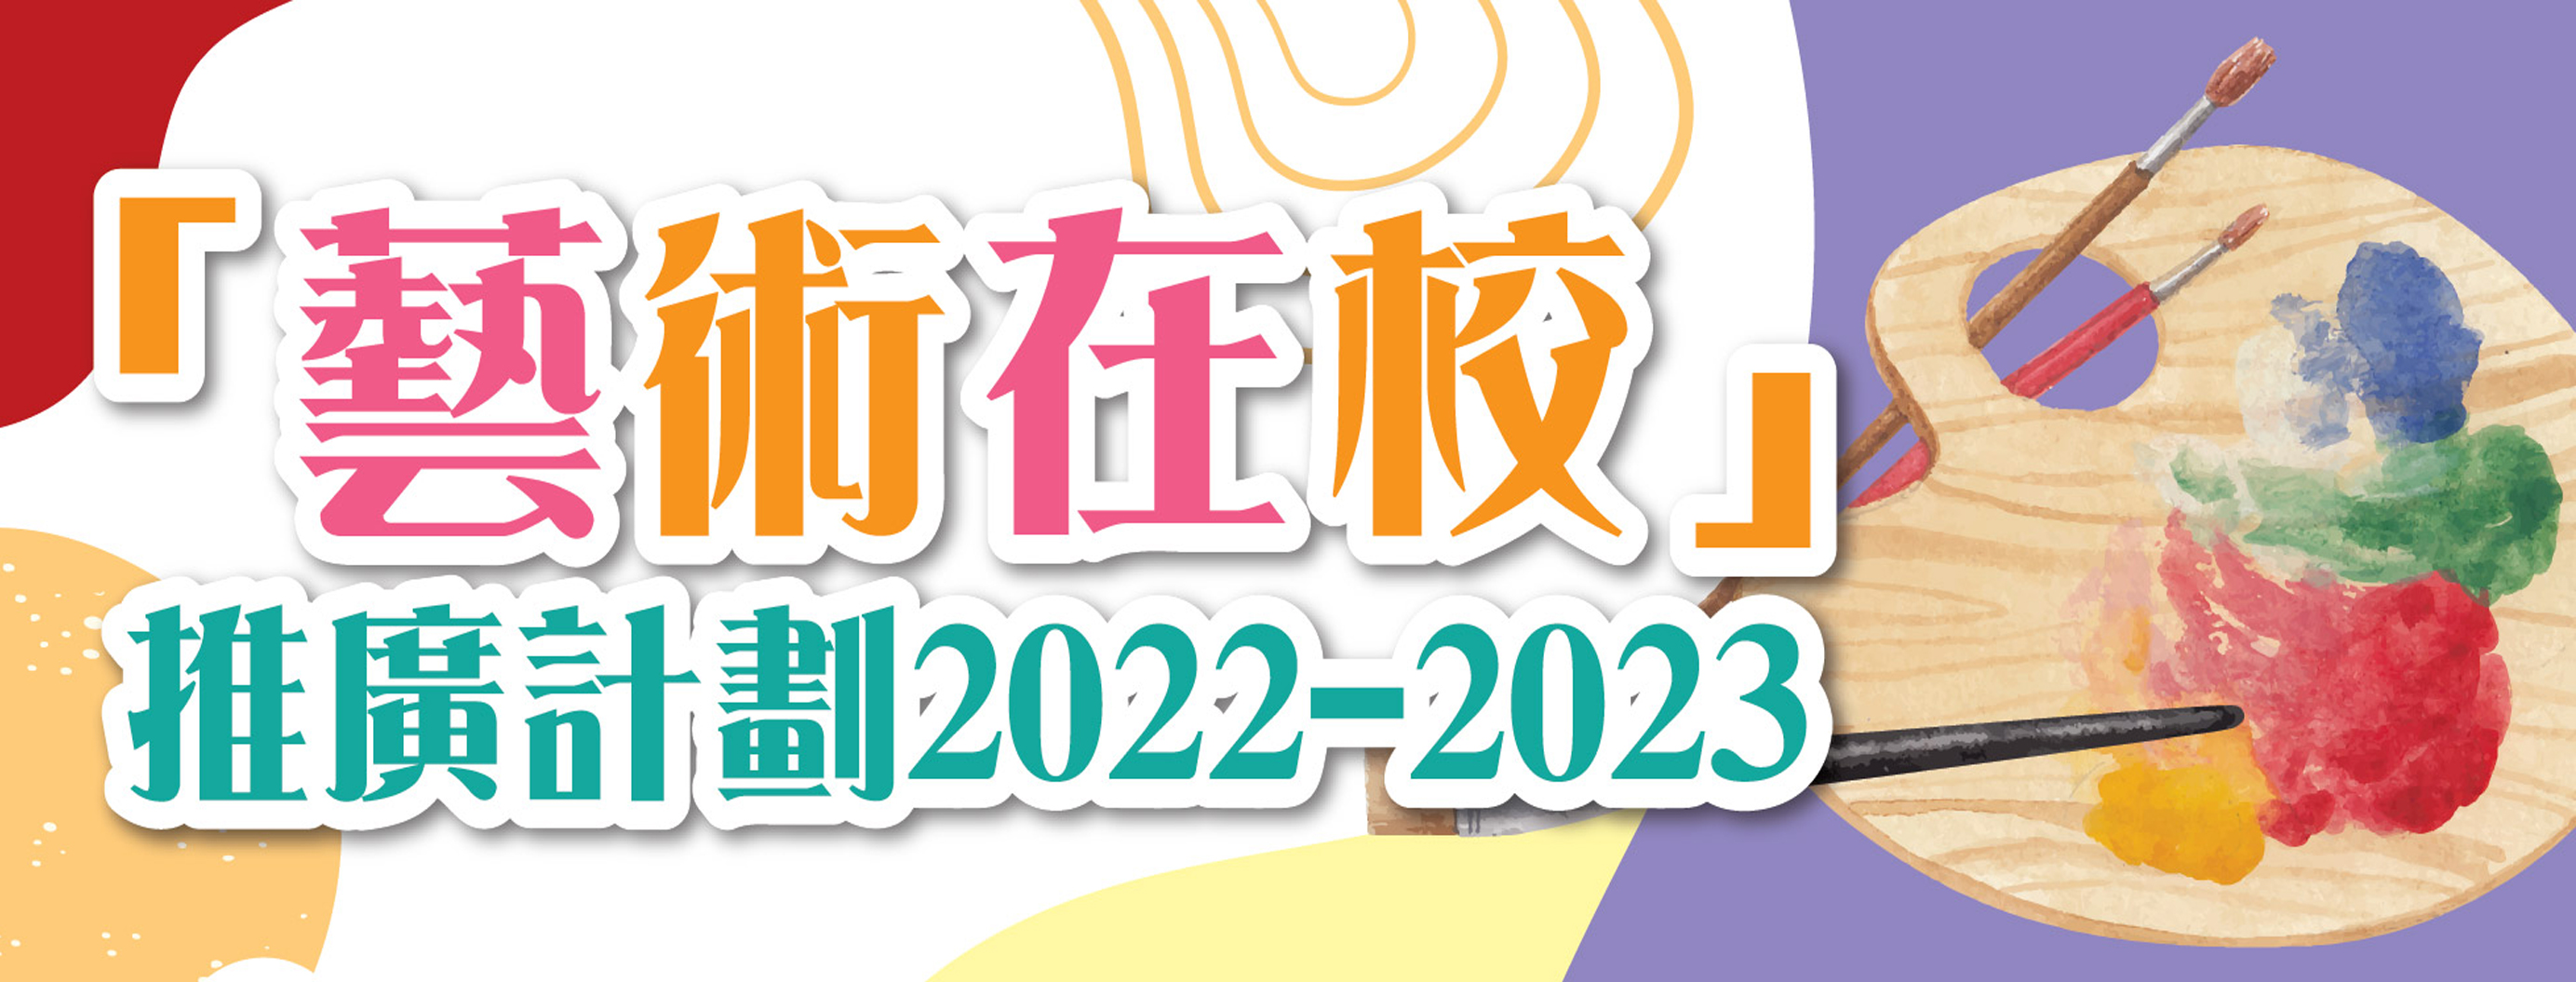 「藝術在校」推廣計劃2022-2023